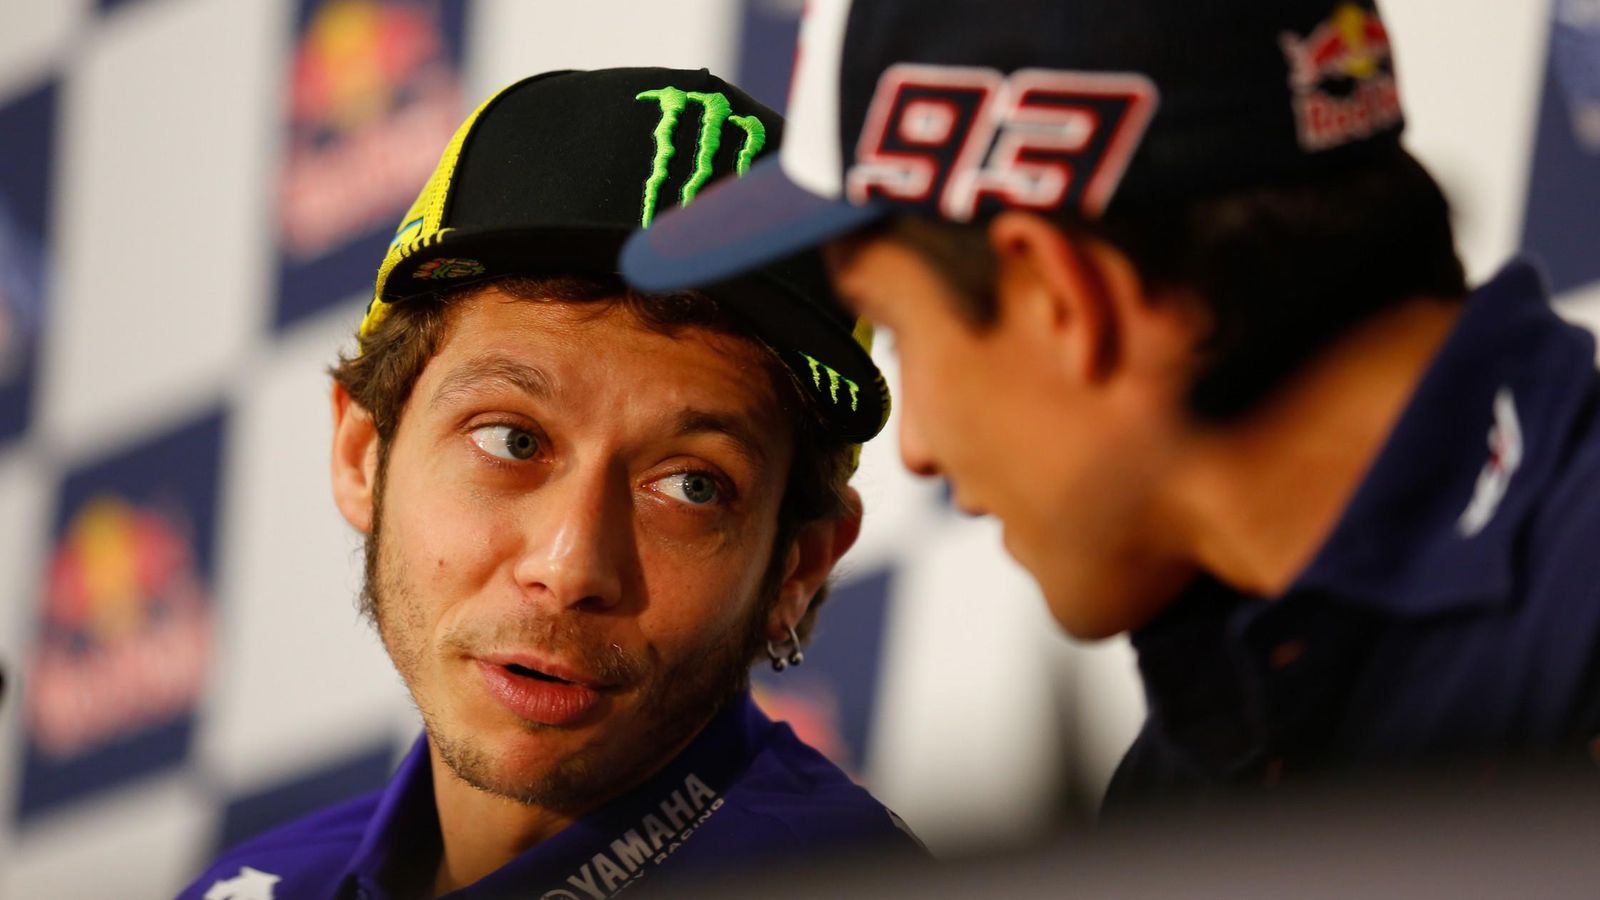 Foto: Valentino Rossi charla con Márquez durante la rueda de prensa (MotoGP).